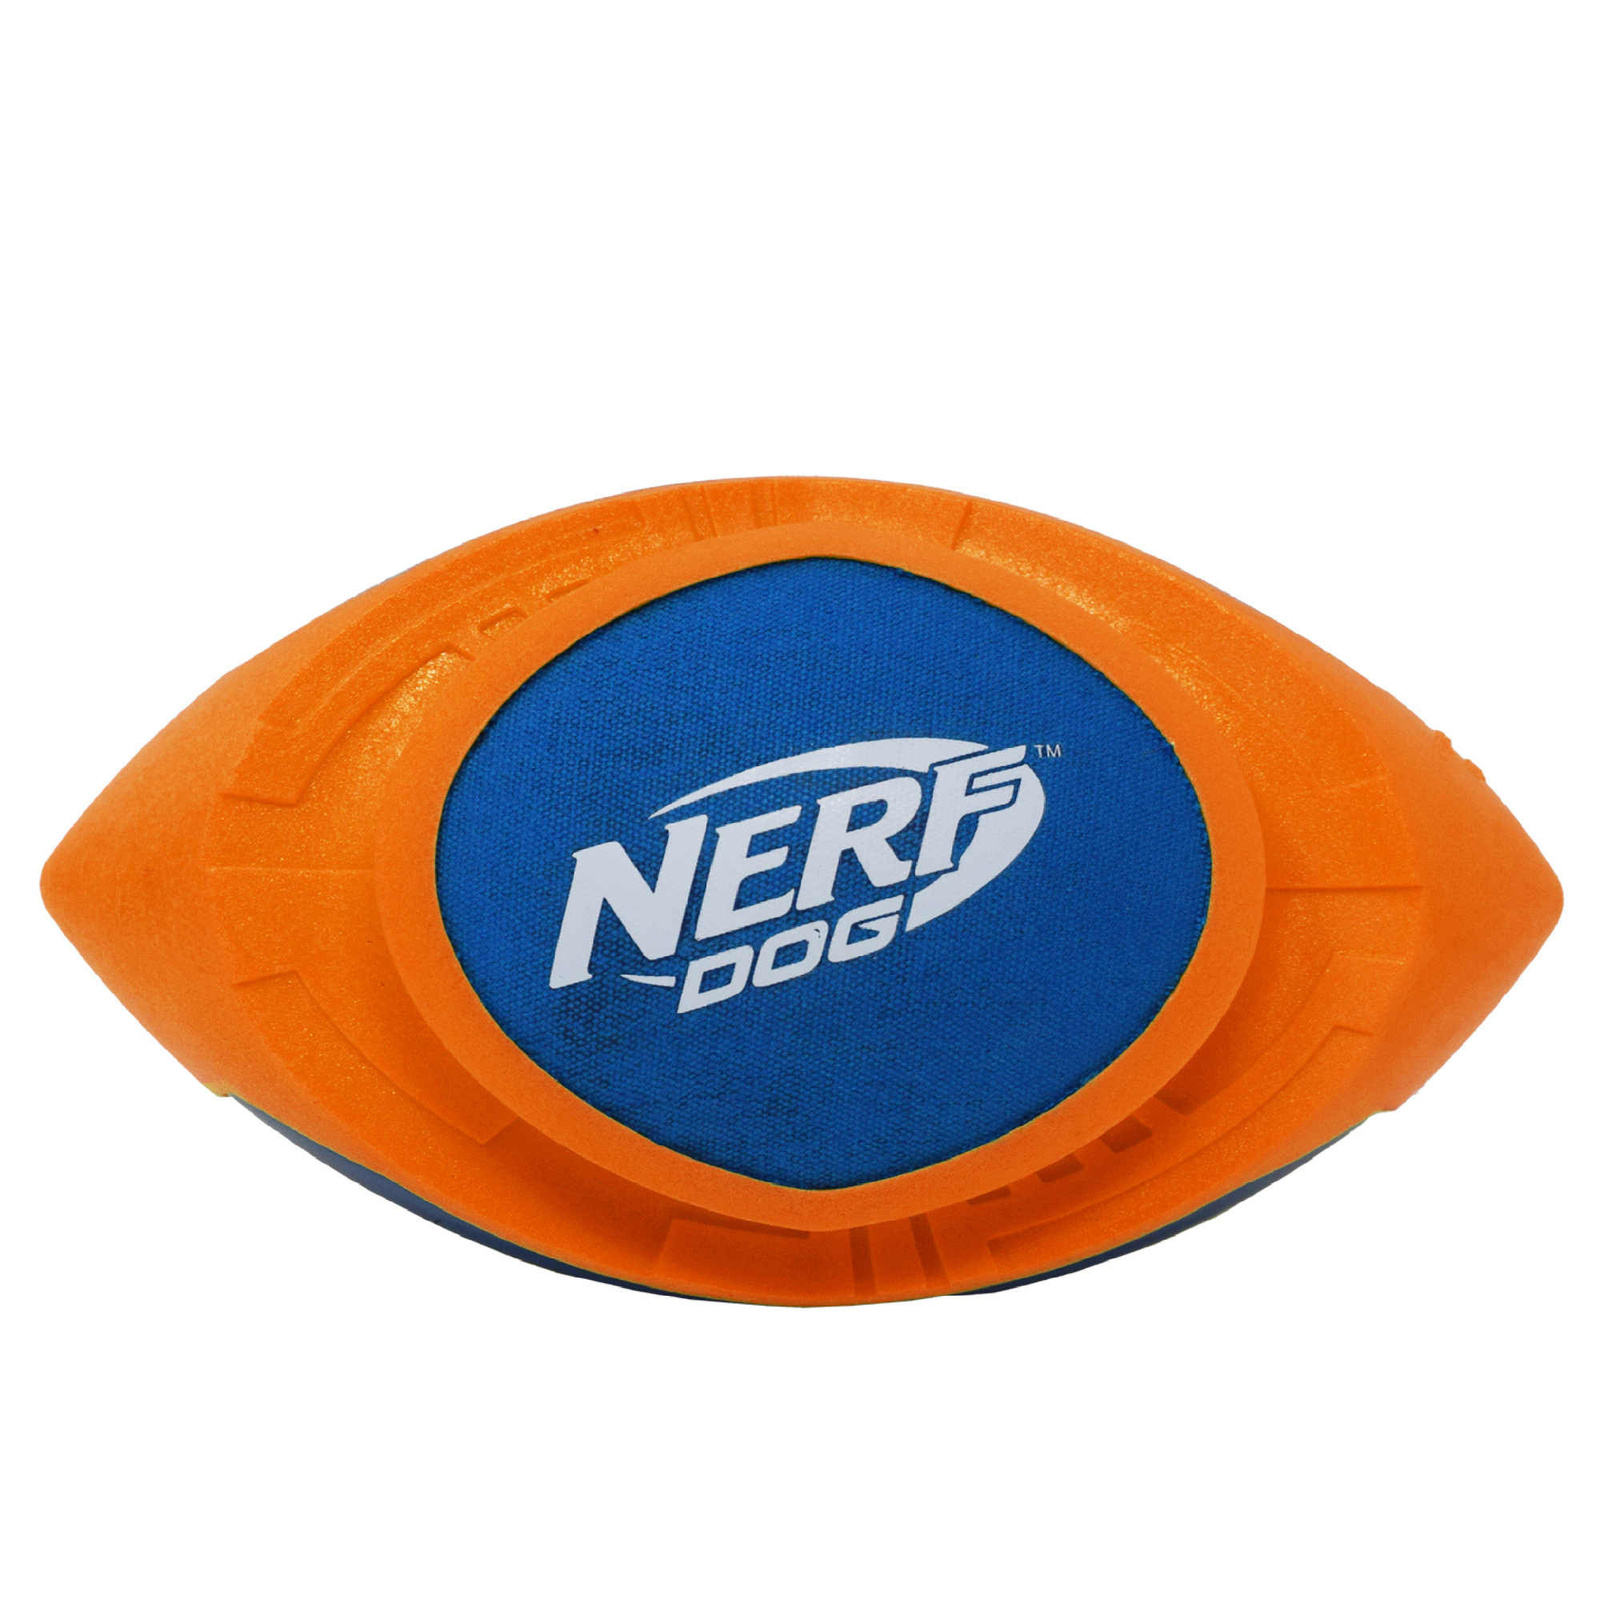 Nerf Nerf мяч для регби из вспененной резины и нейлона, 18 см (серия Мегатон), (синий/оранжевый) (263 г) nerf nerf мяч для регби с плетеным шлейфом 48 см синий оранжевый зеленый красный 272 г